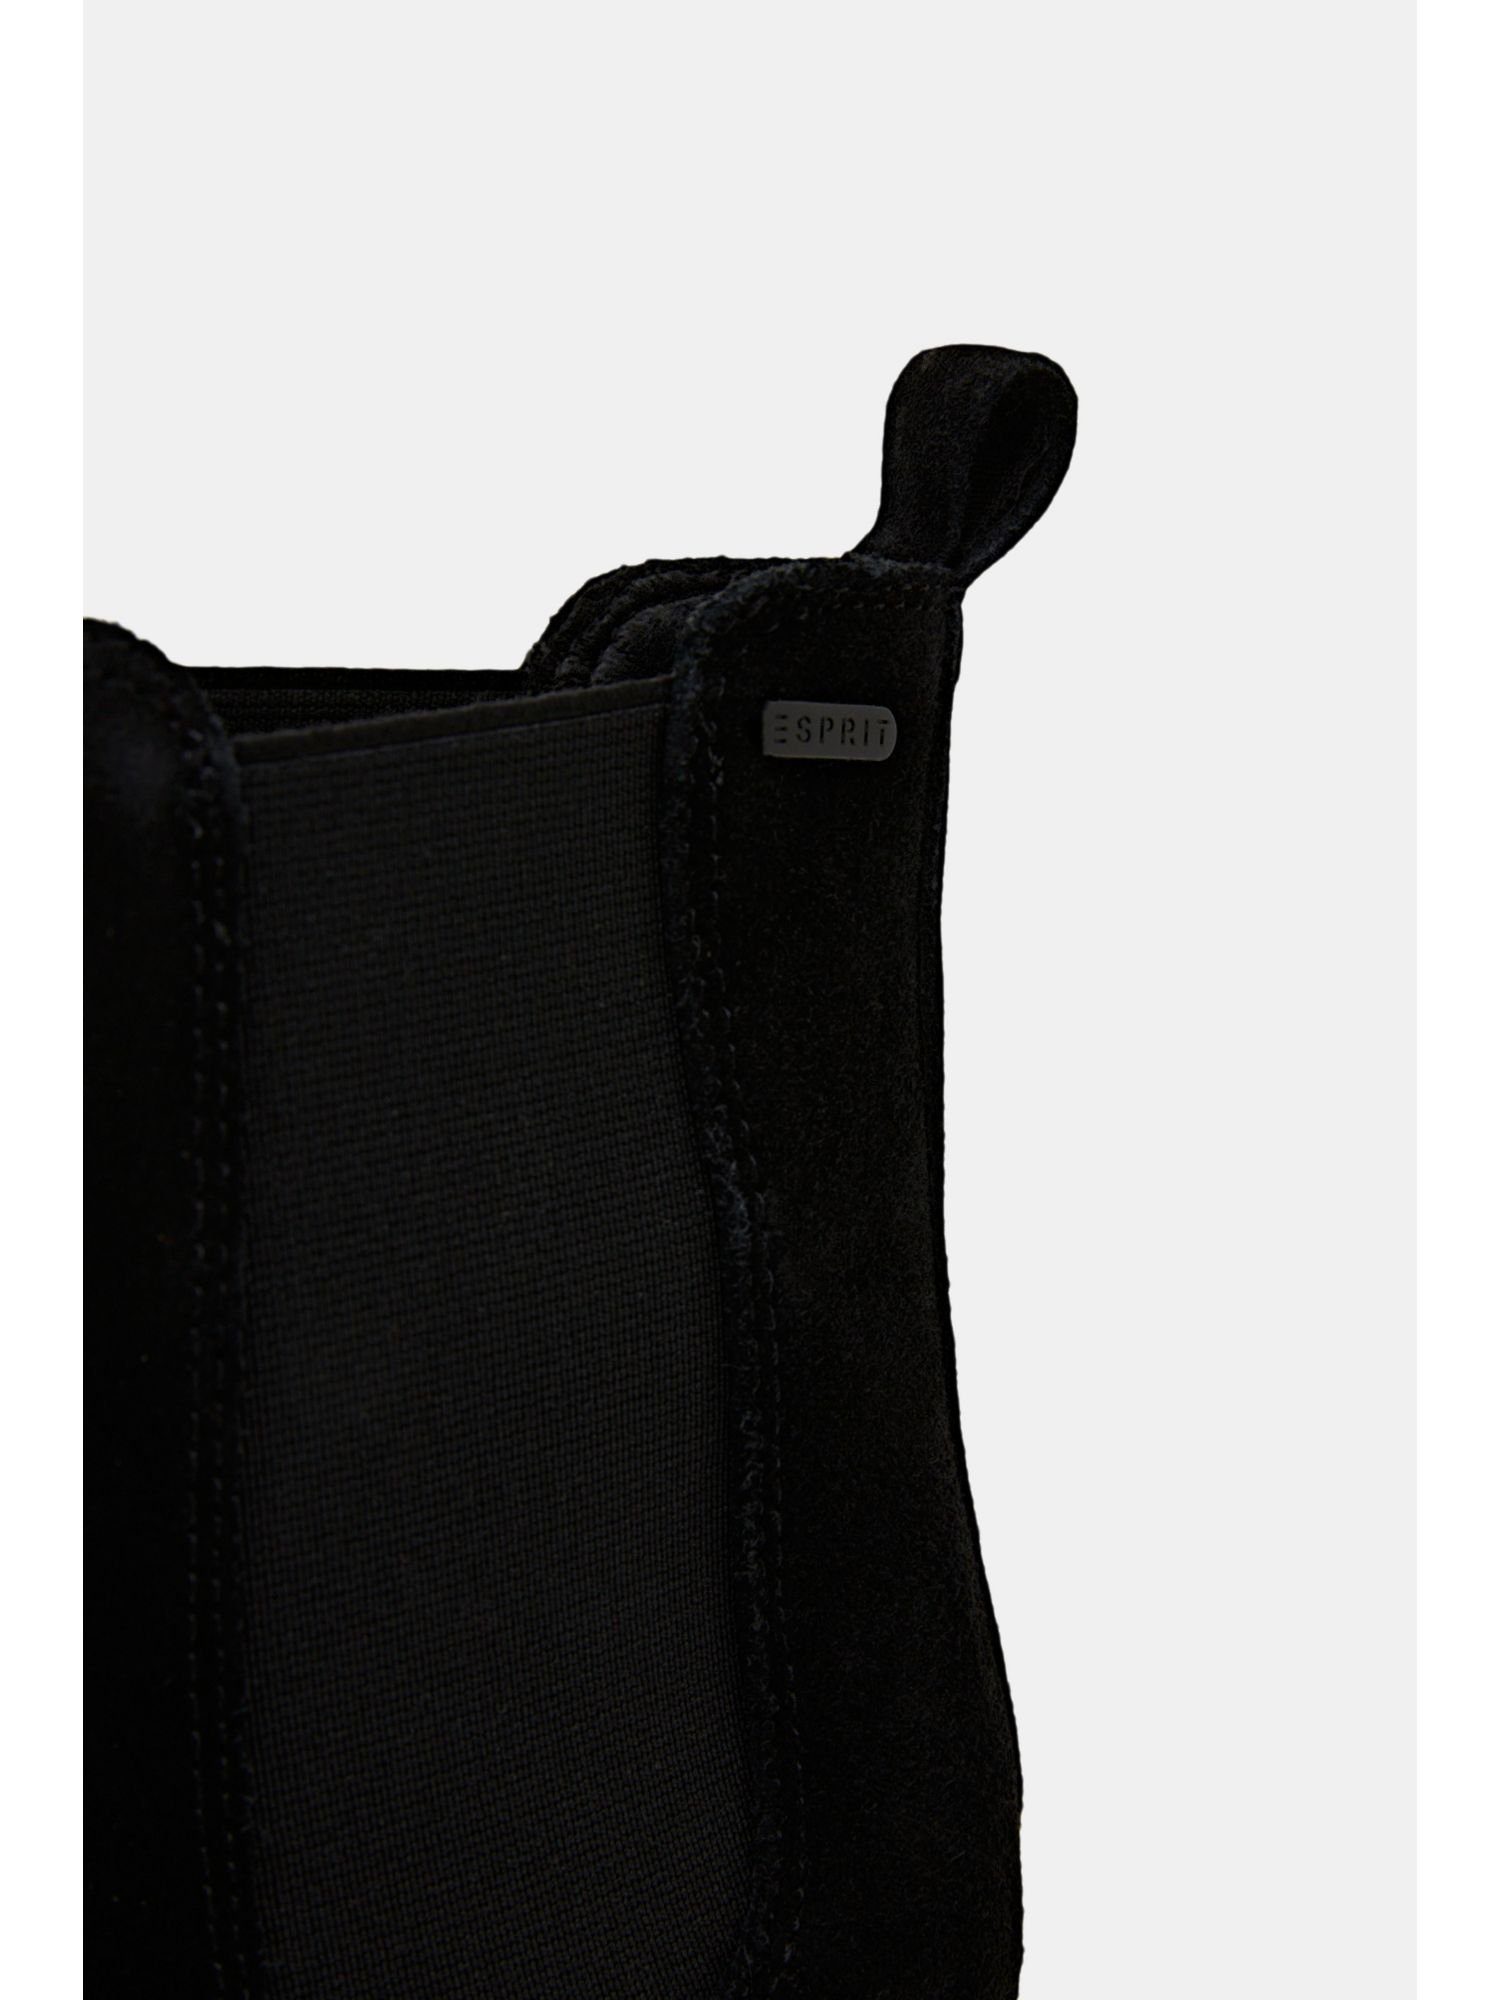 Blockabsatz BLACK mit Stiefelette Rauleder-Boots Esprit